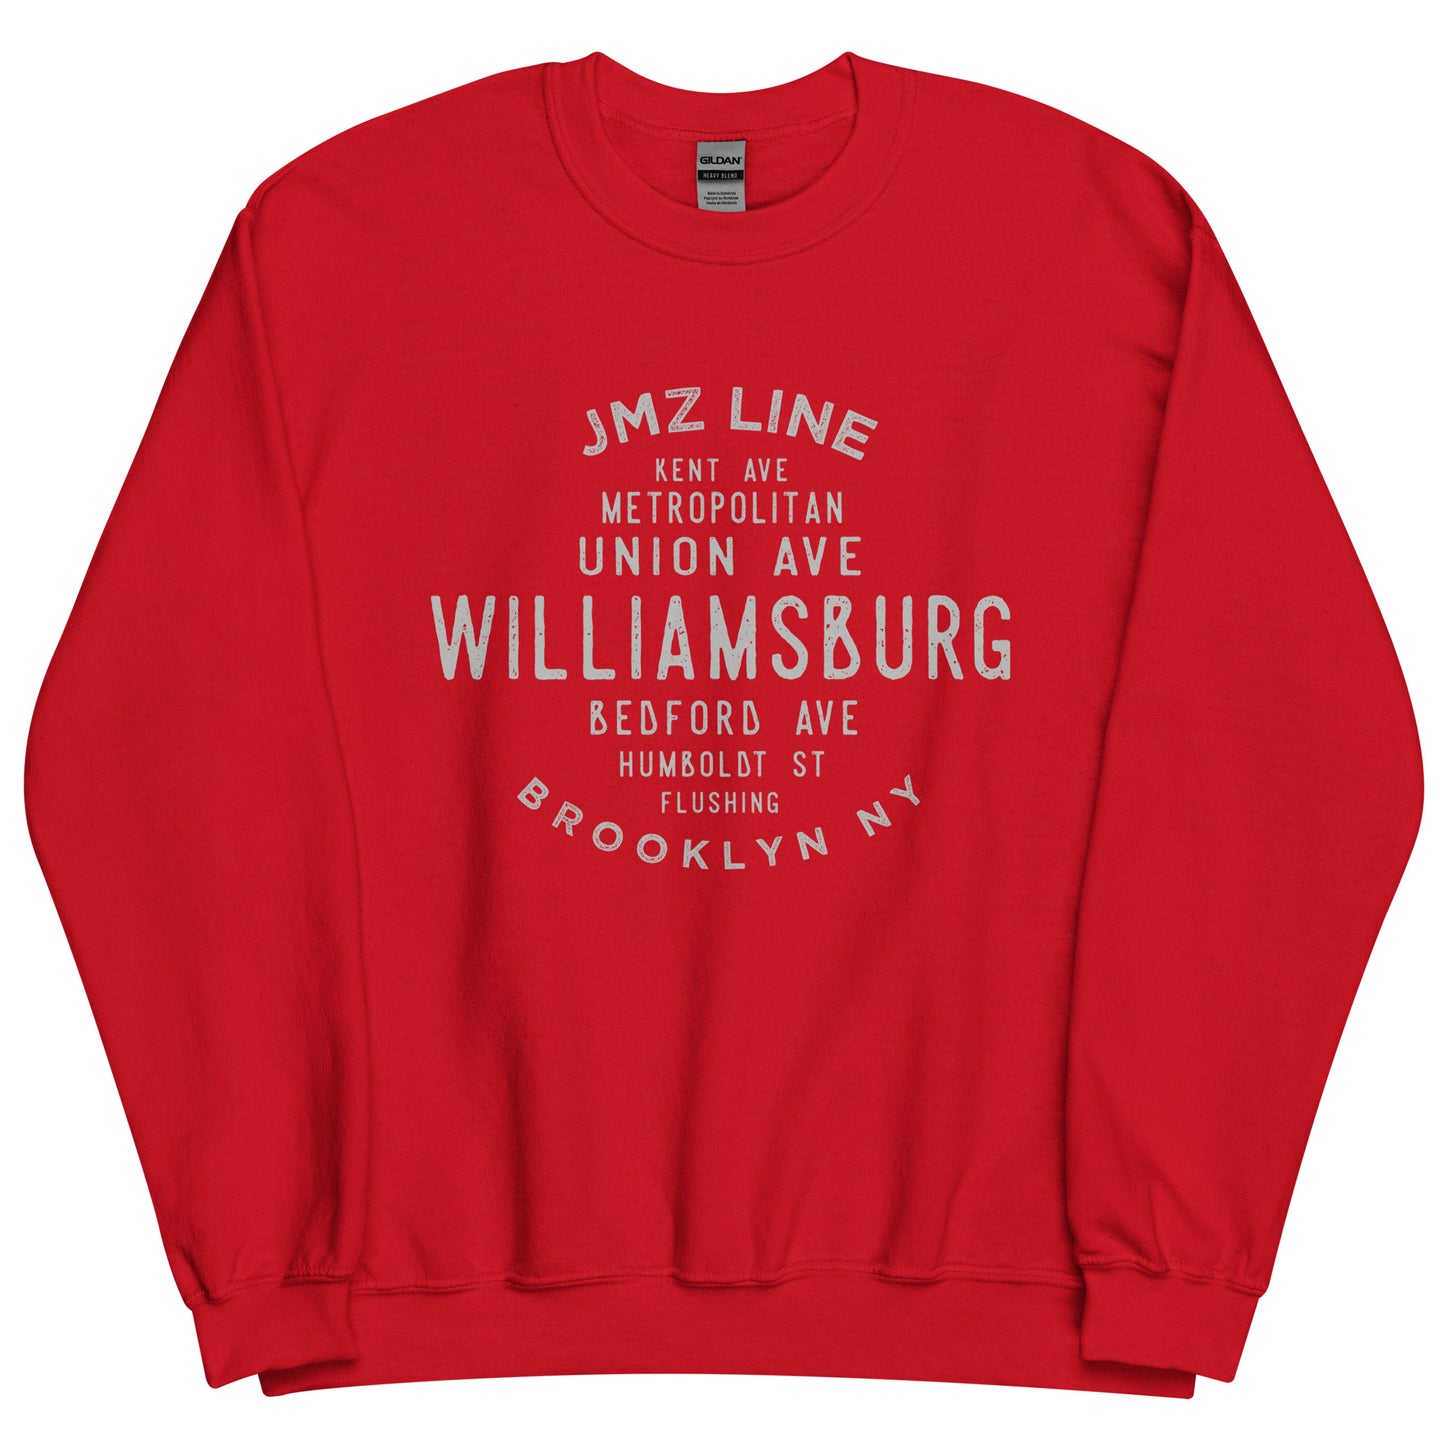 Williamsburg Brooklyn NYC Adult Sweatshirt